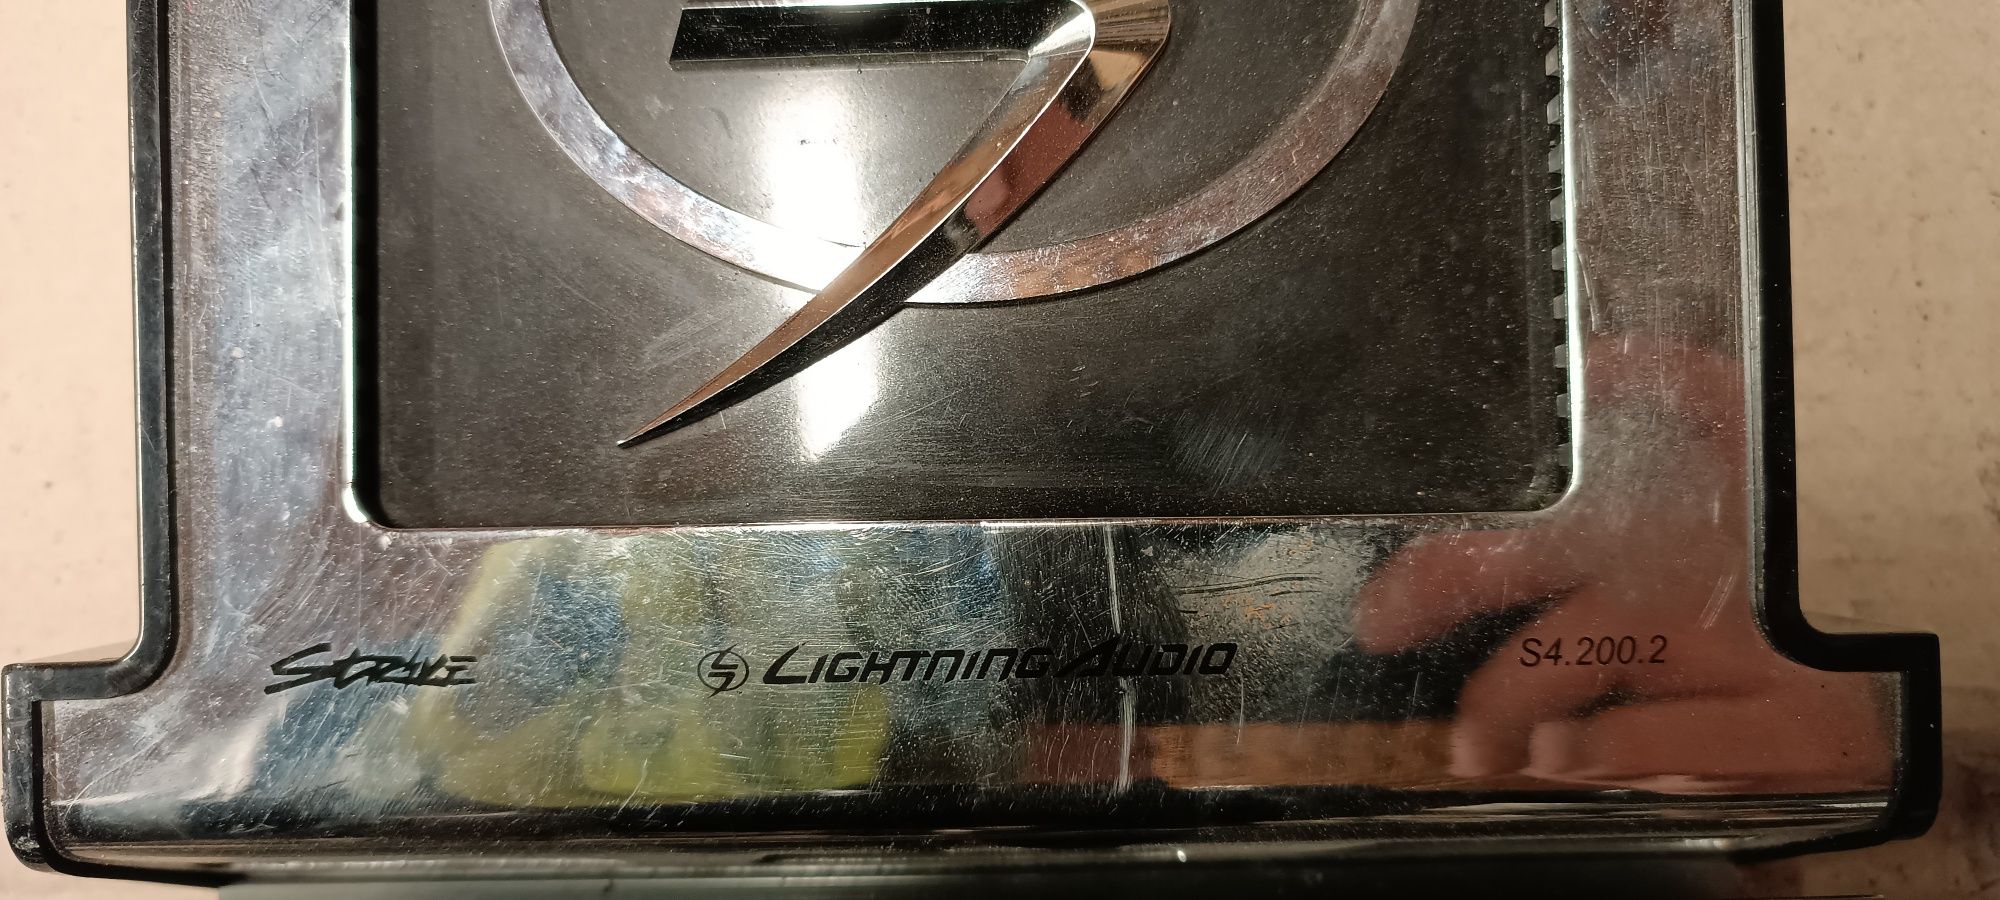 Автомобильный усилитель Lightning Audio S4.200.2